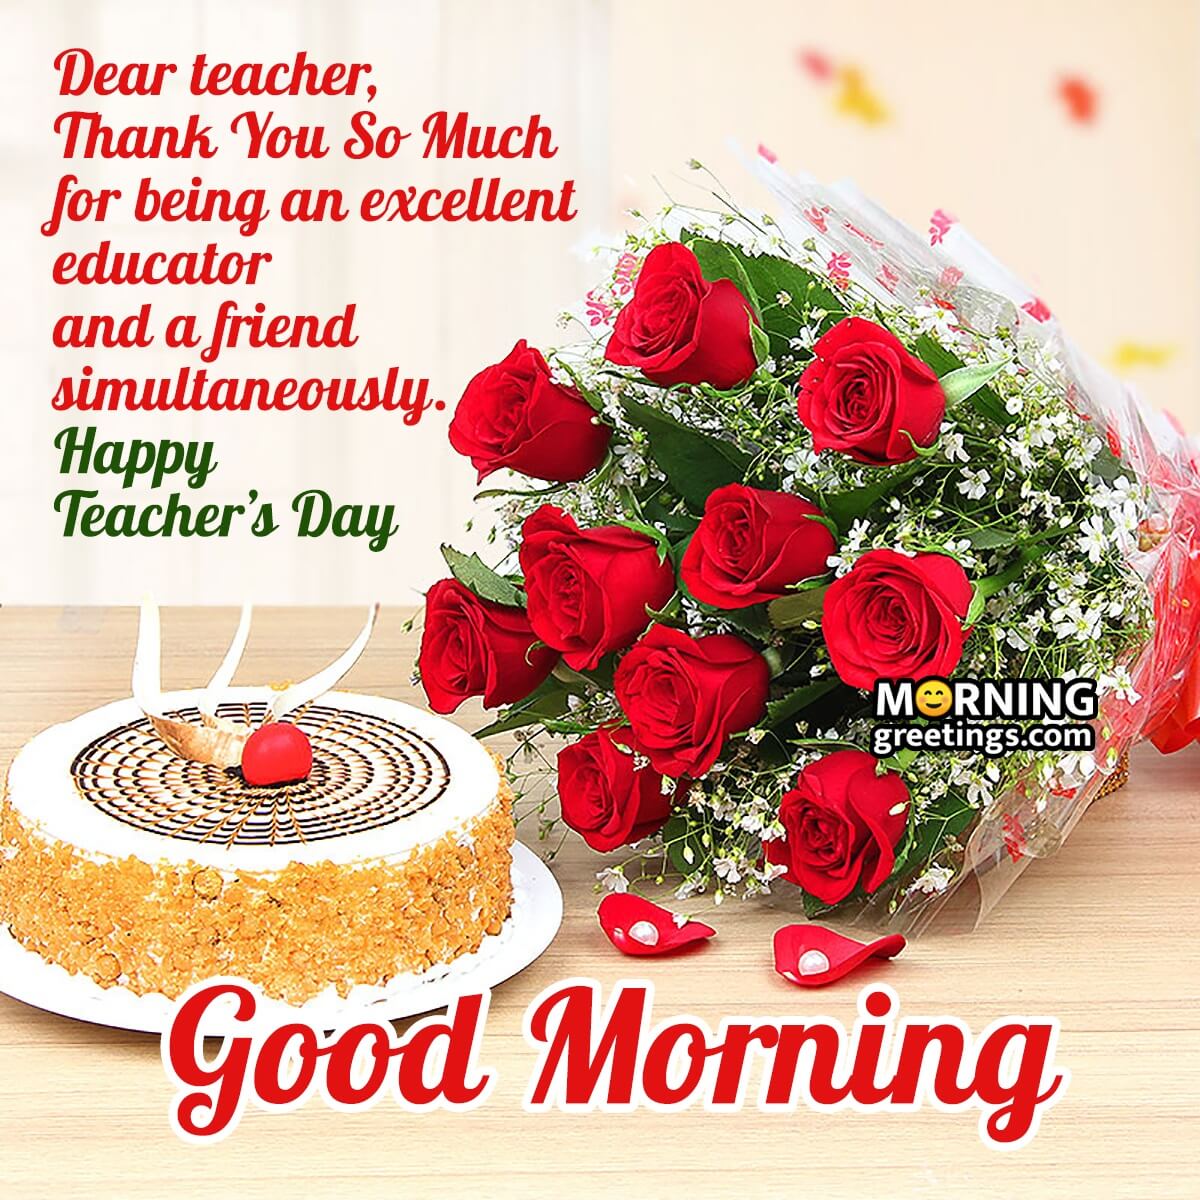 Good Morning Teacher's Day Thanks Image